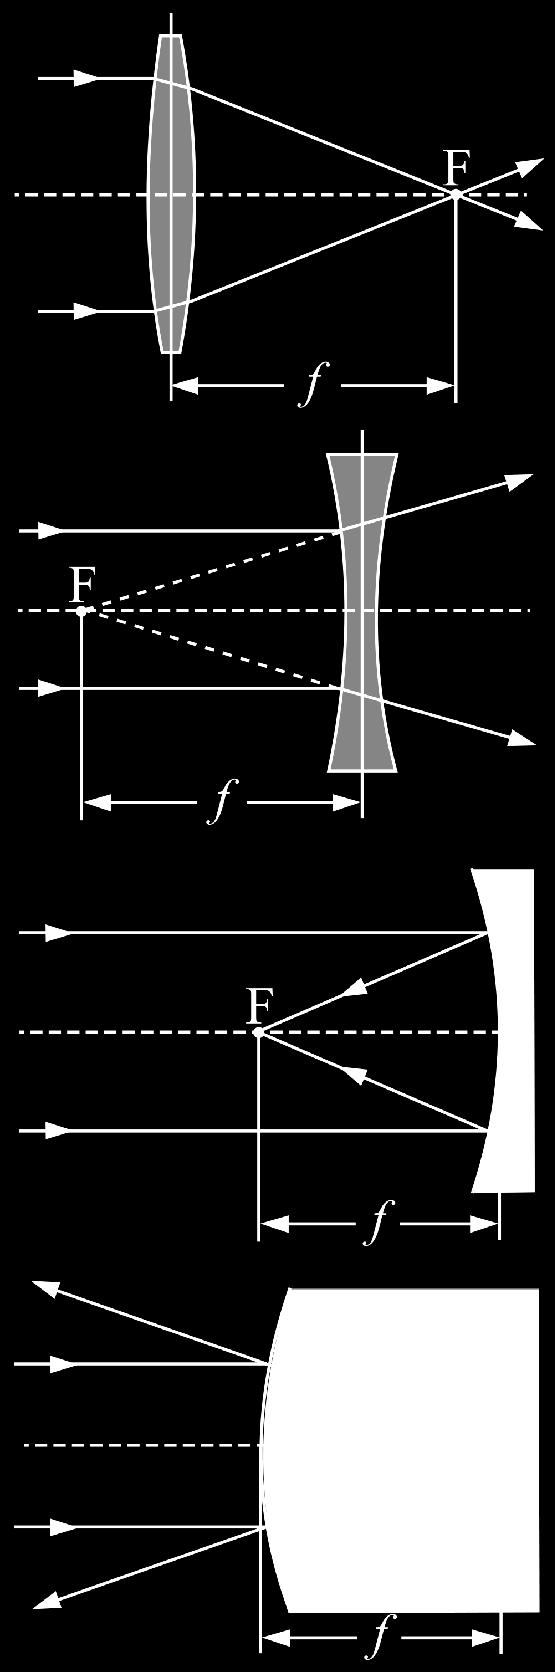 Dünne Linse Brennweite Die Brechung an zwei Flächen wird auf eine einzige Brechung an der Hauptebene (engl. principal plane) reduziert.